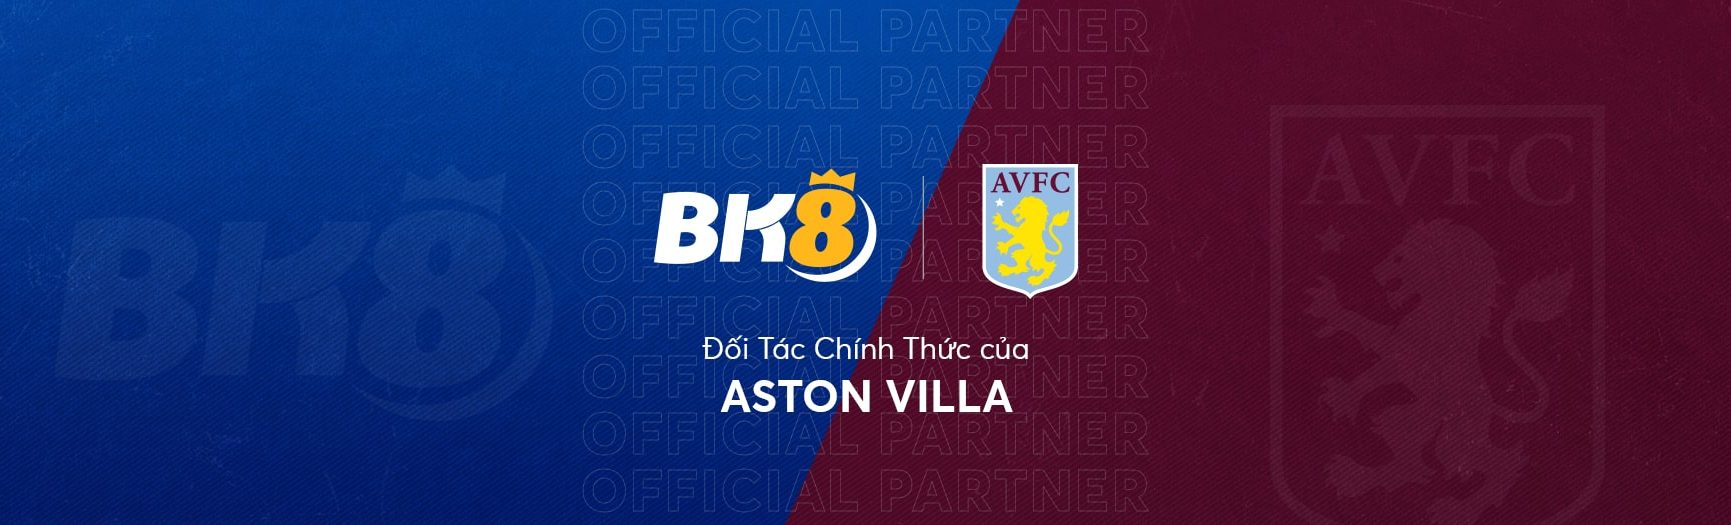 BK8-x-Aston-Villa-VN